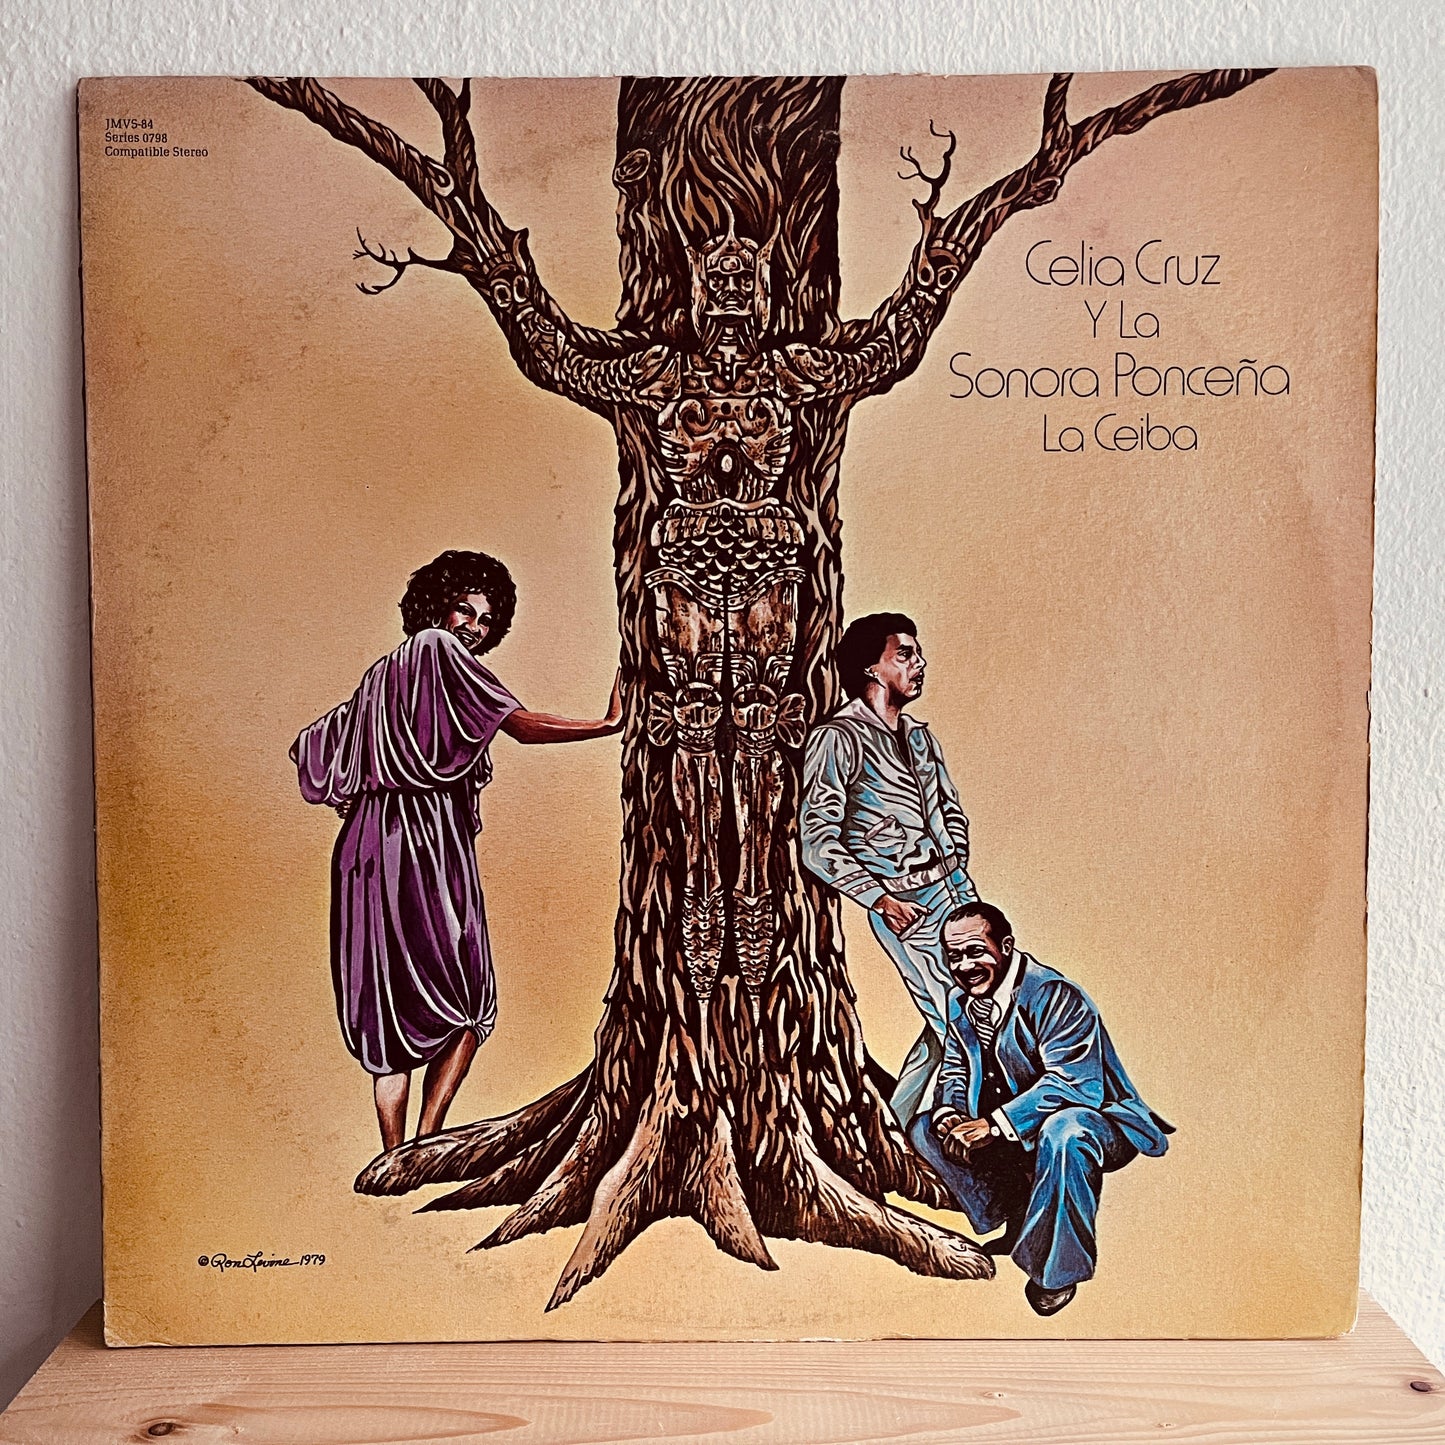 Celia Cruz Y La Sonora Ponceña – La Ceiba